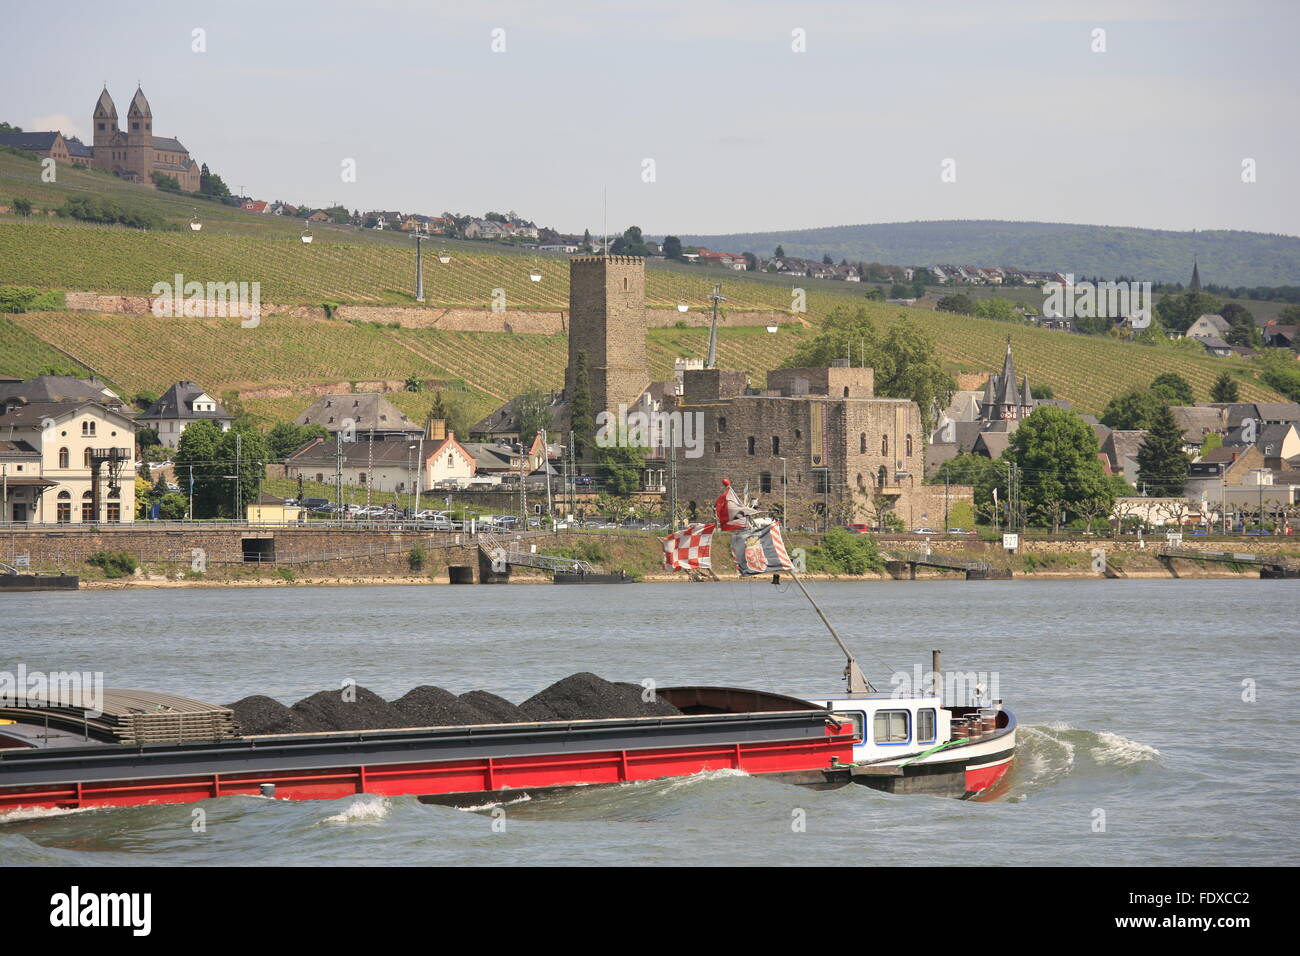 Deutschland, Renania-Palatinato, Bingen am Rhein, Blick auf das hessische gegenueberliegende Ufer mit Ruedesheim am Rhein Foto Stock